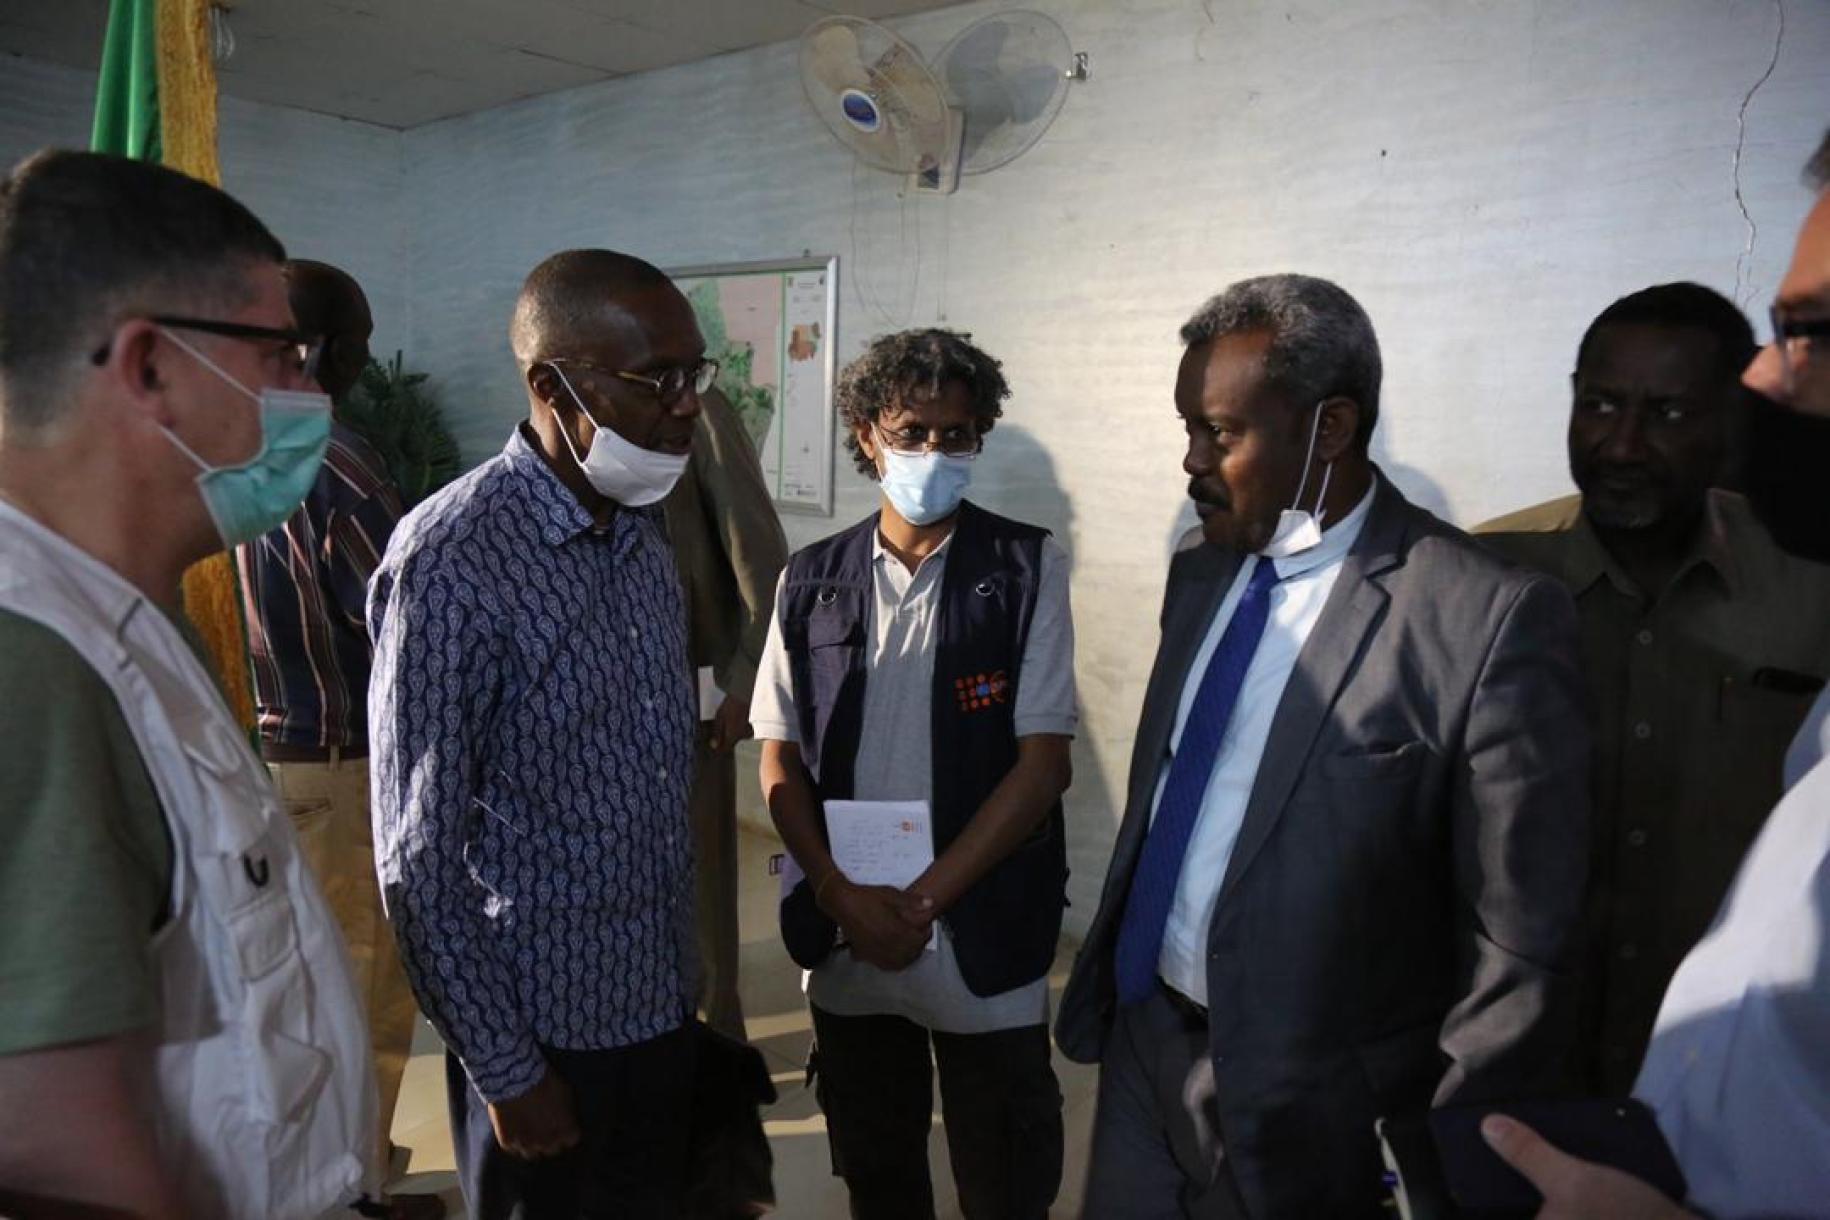 El Coordinador Residente de la ONU en Sudán, Babacar Cissé, con miembros del personal de la ONU y el jefe del equipo de seguridad del campamento, Wali.